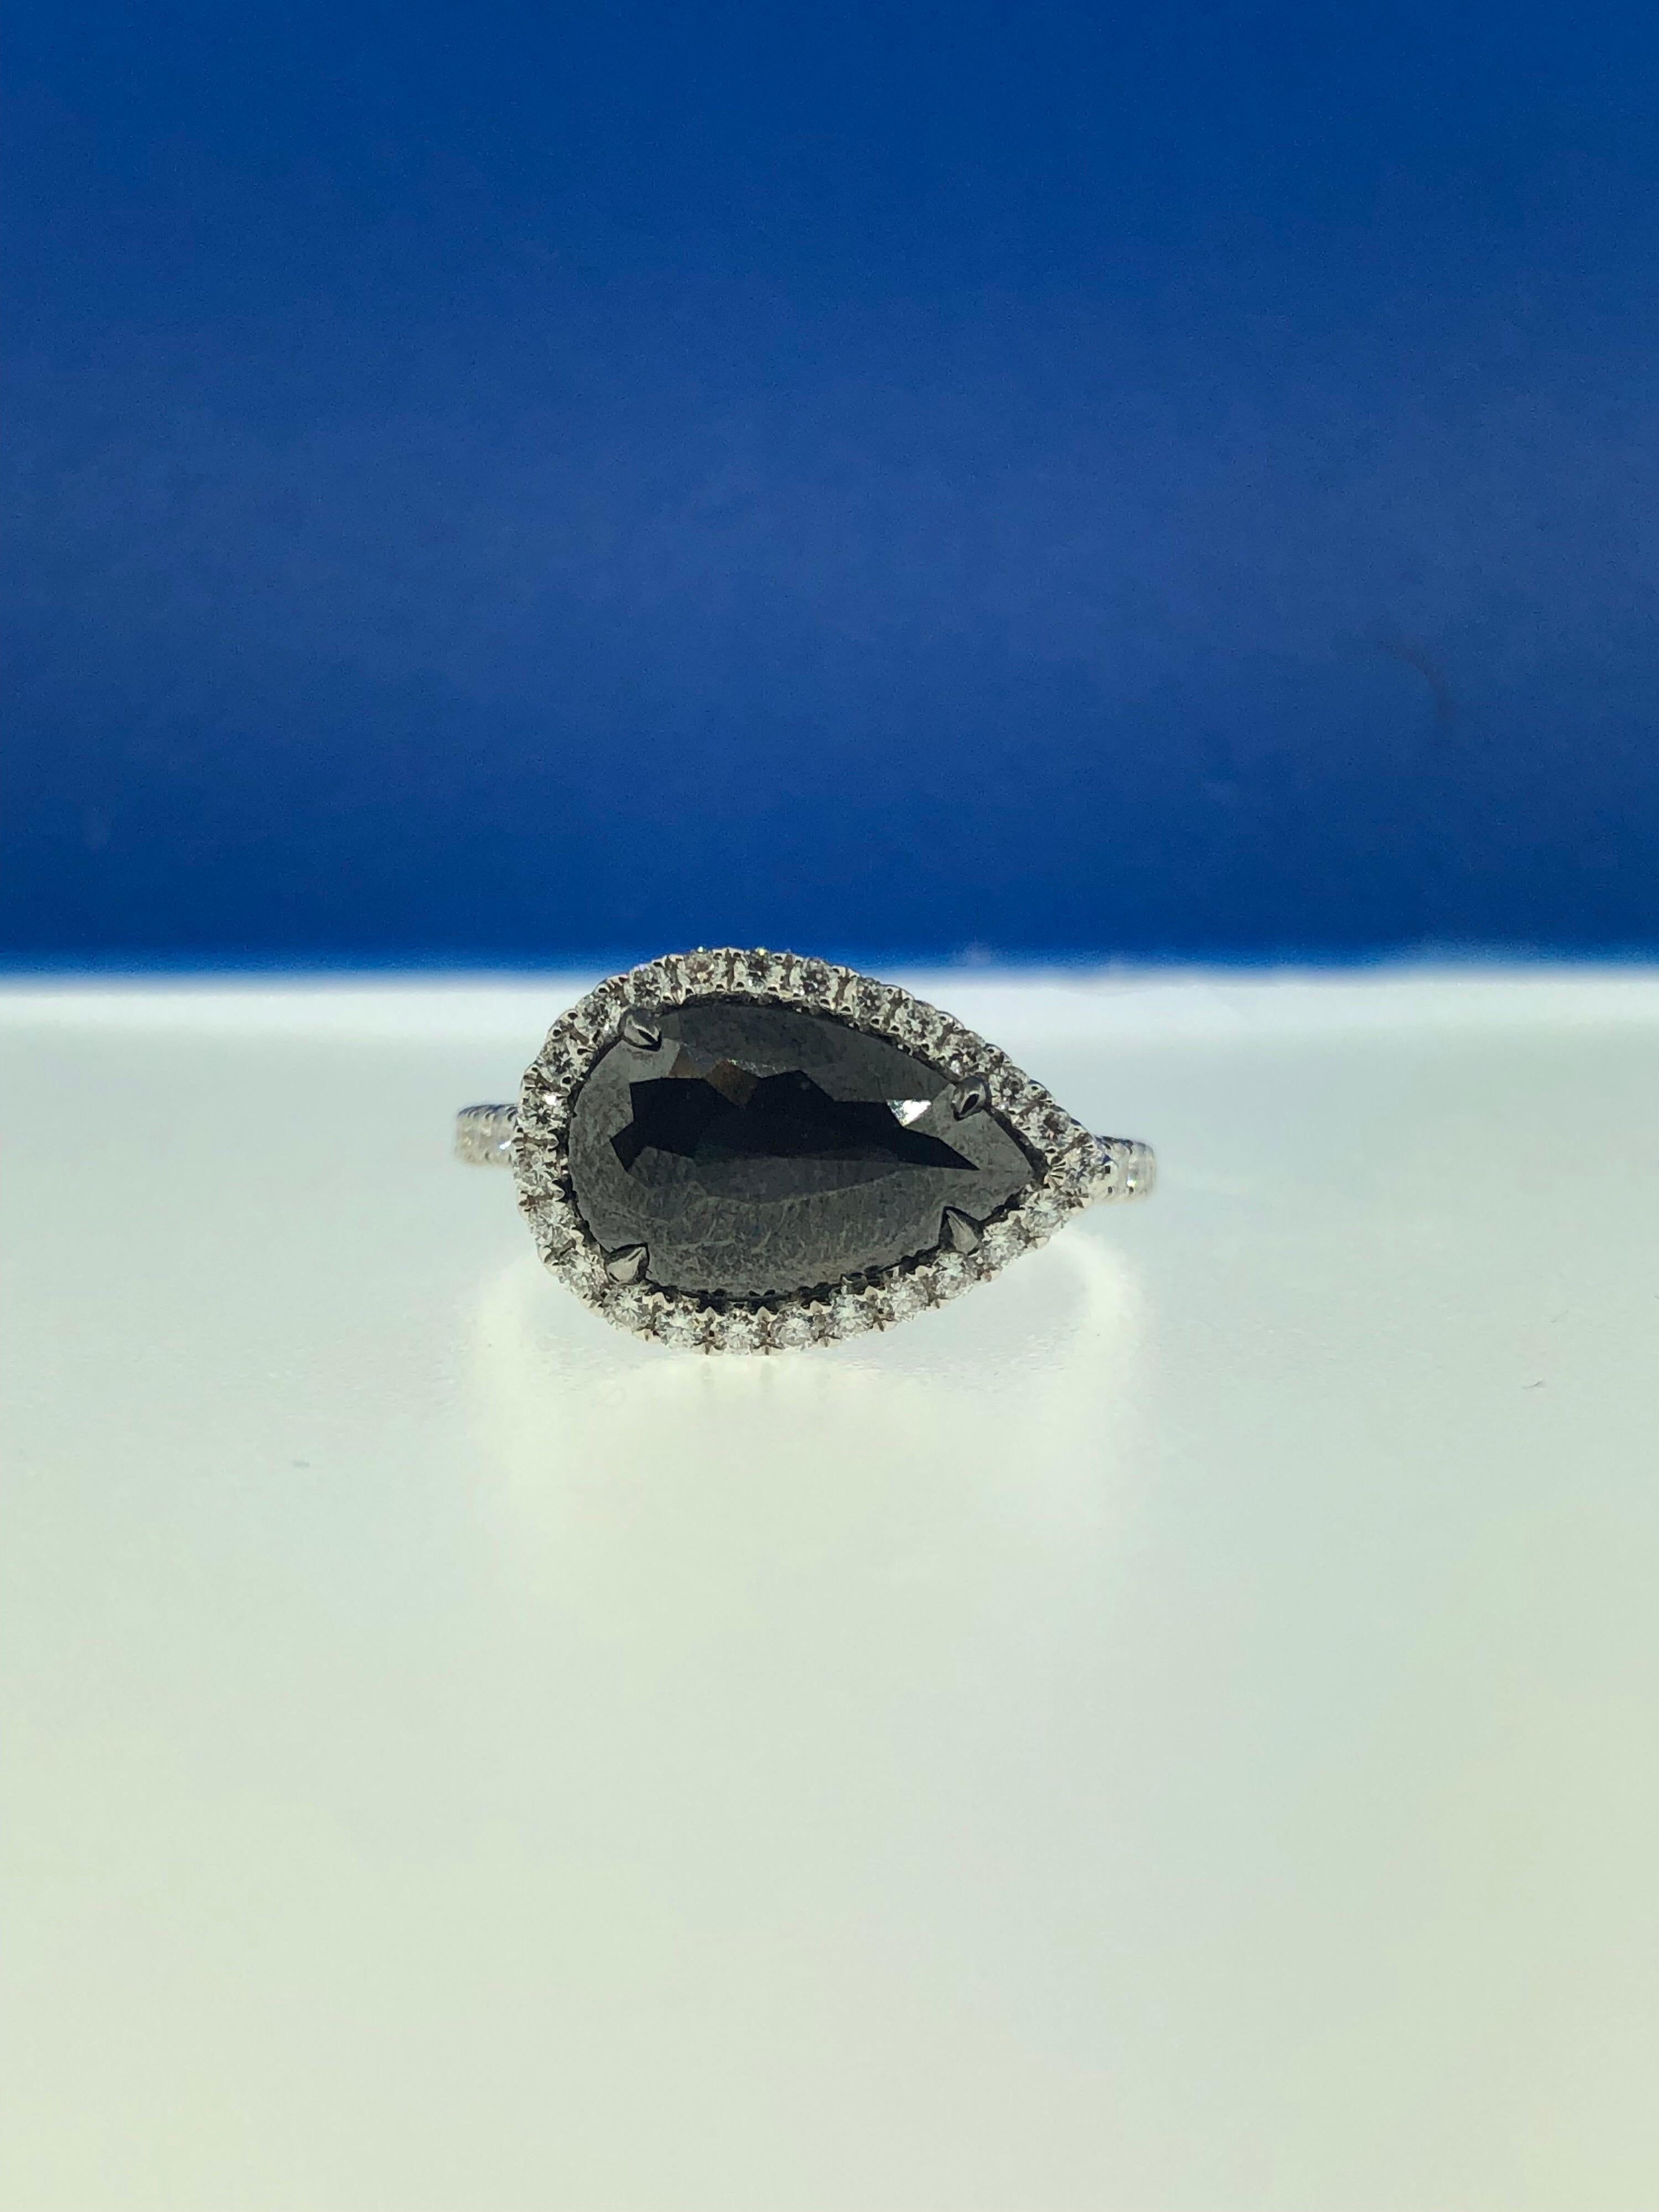 Dieser atemberaubende Ring präsentiert einen wunderschönen schwarzen Diamanten im Rosenschliff von 2,34 Karat in Birnenform mit einem Halo aus weißen Diamanten, gefasst in 18 Karat Weißgold. 
Gesamtgewicht der Diamanten (ohne den Mittelstein) = 0,44